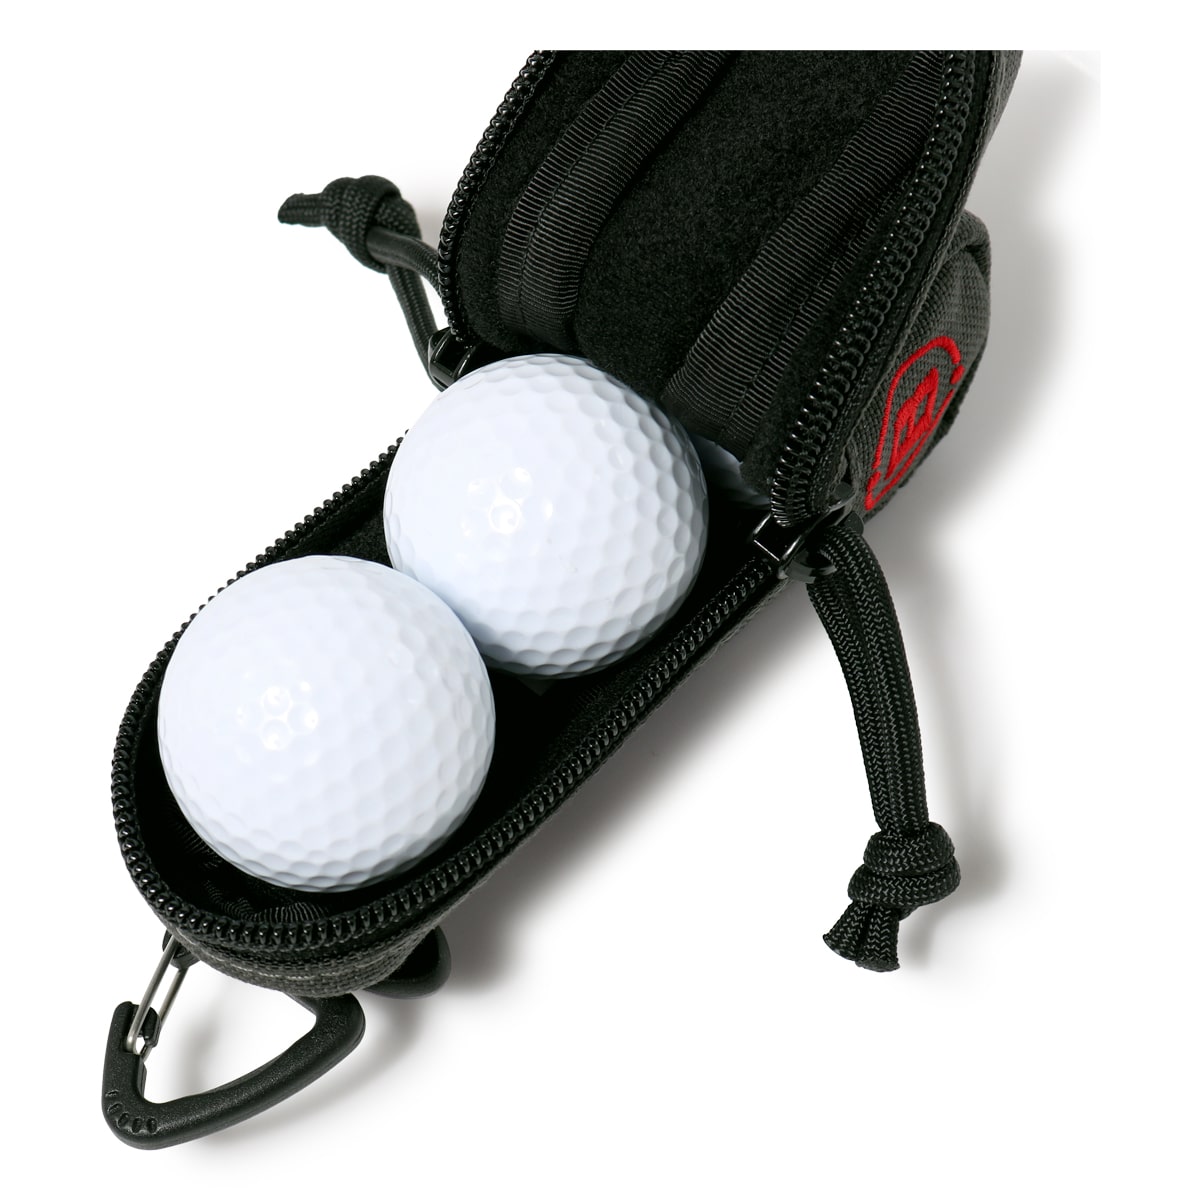 ブリーフィング ゴルフ ボールポーチ VORTEX(R) CANVAS SERIES メンズ BRG223G60 BRIEFING  GOLF│ボールケース 3個収納